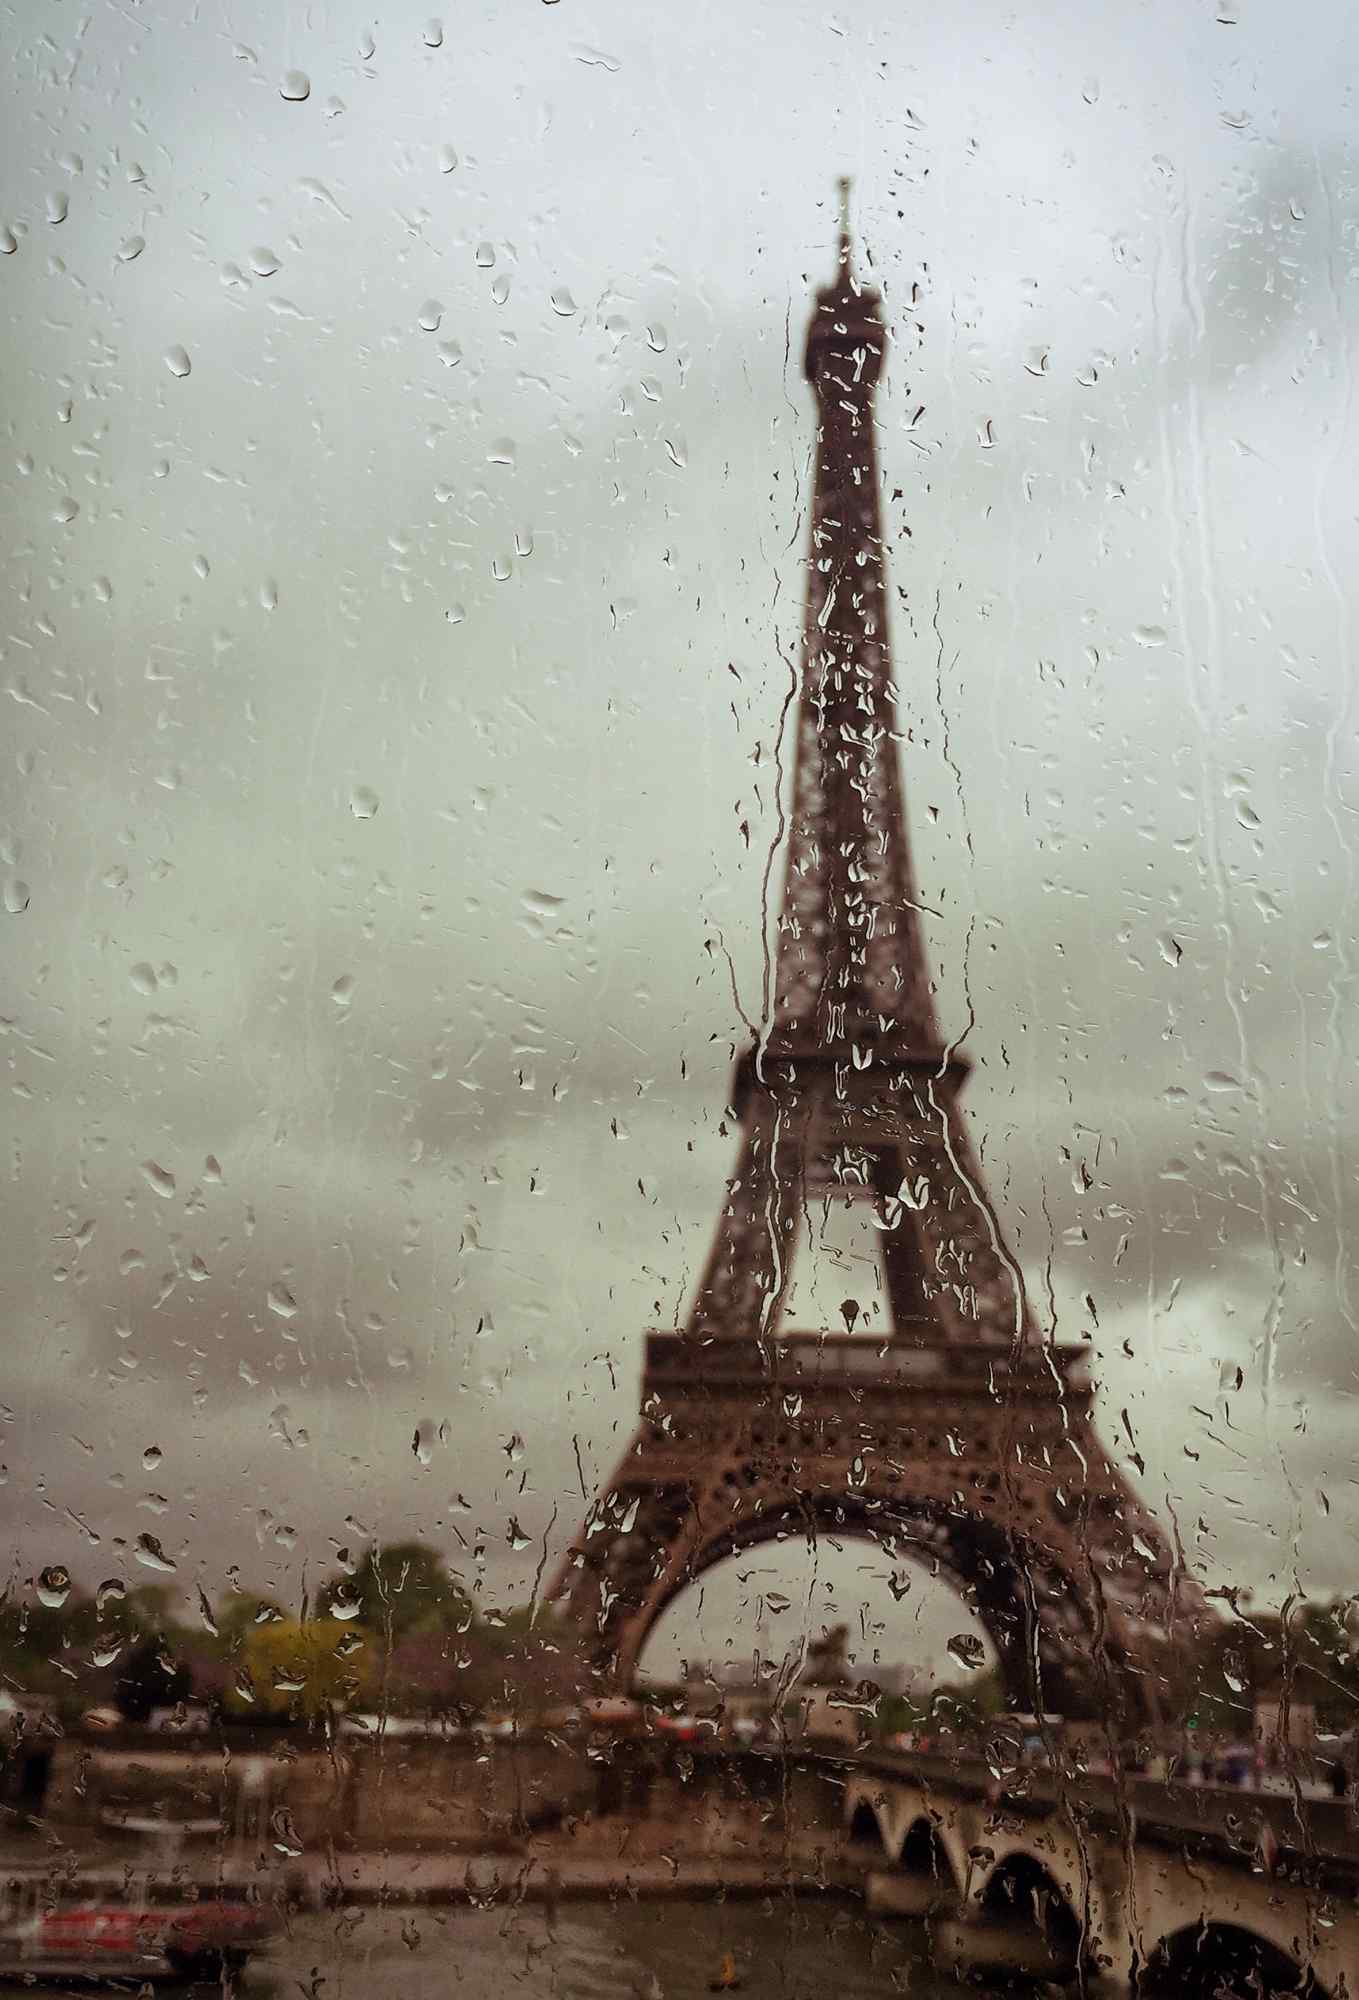 雨中的埃菲尔铁塔图片手机壁纸